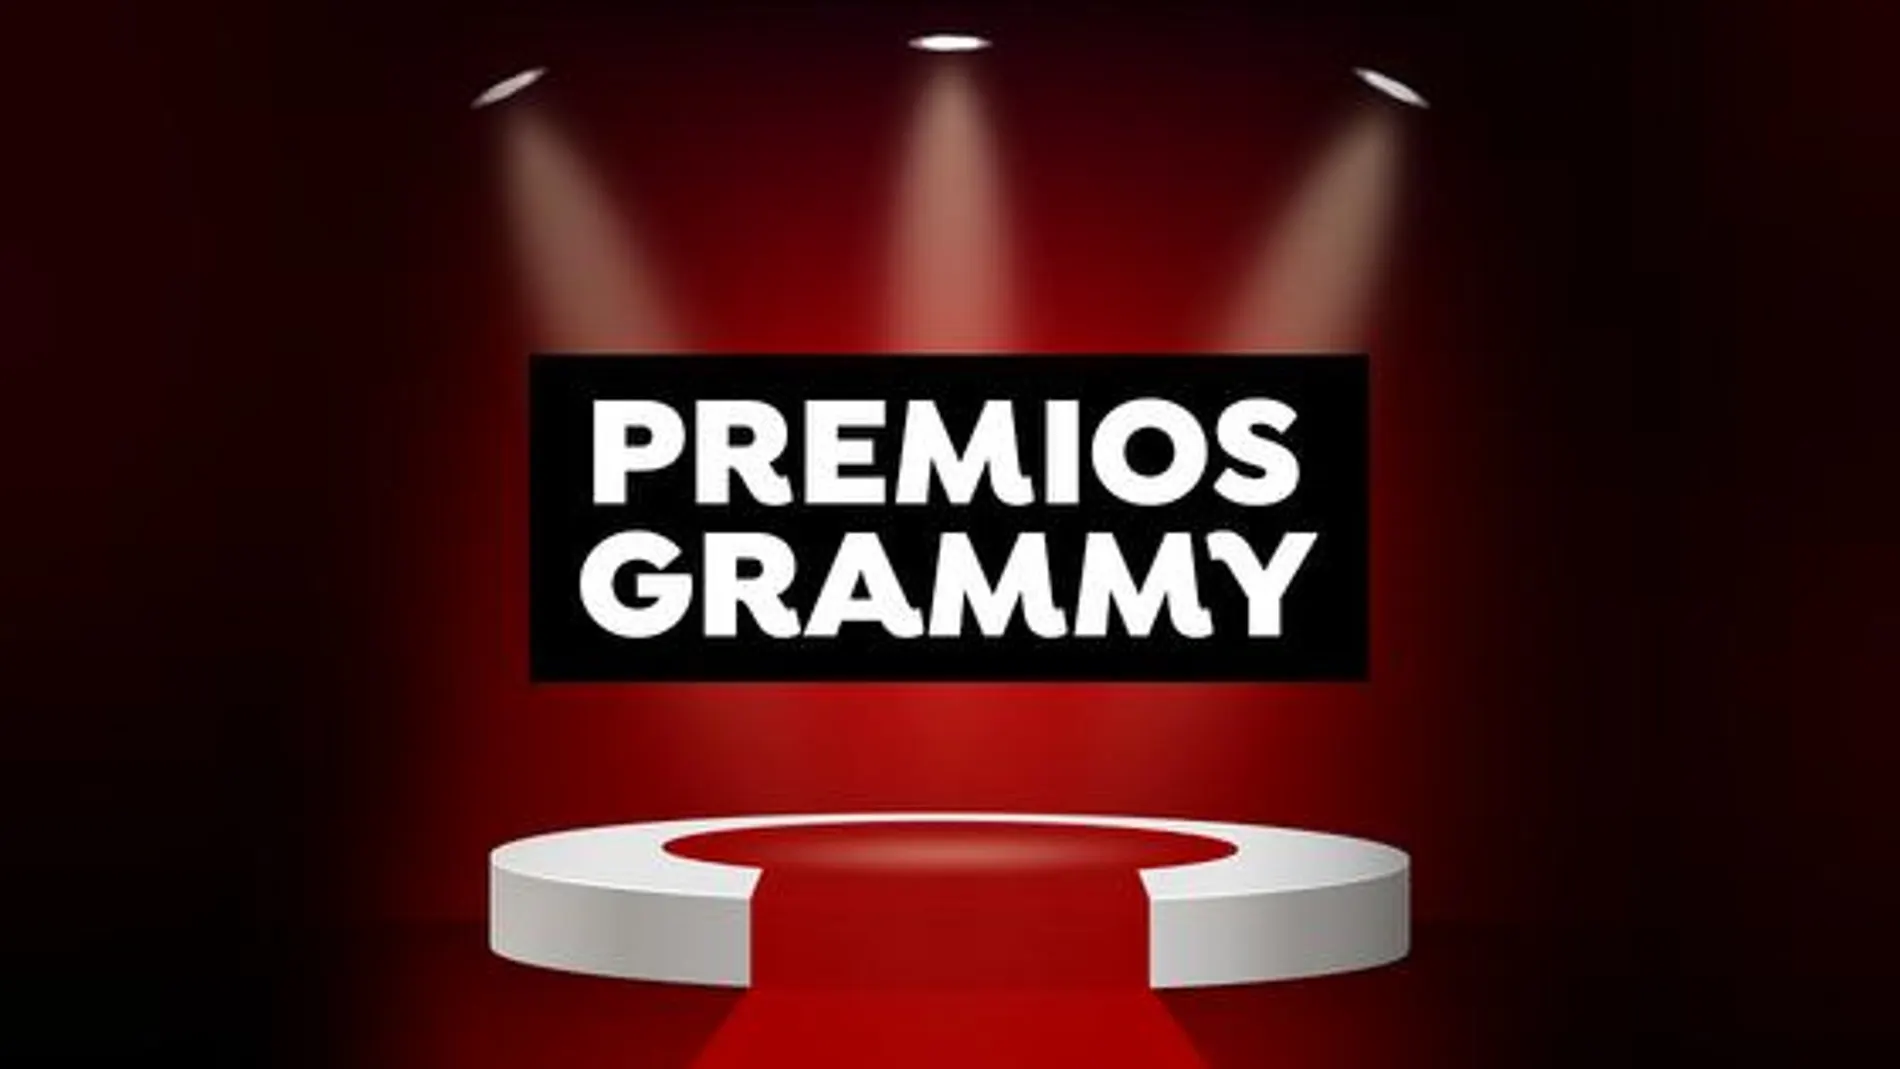 Los nominados de los Premios Grammy 